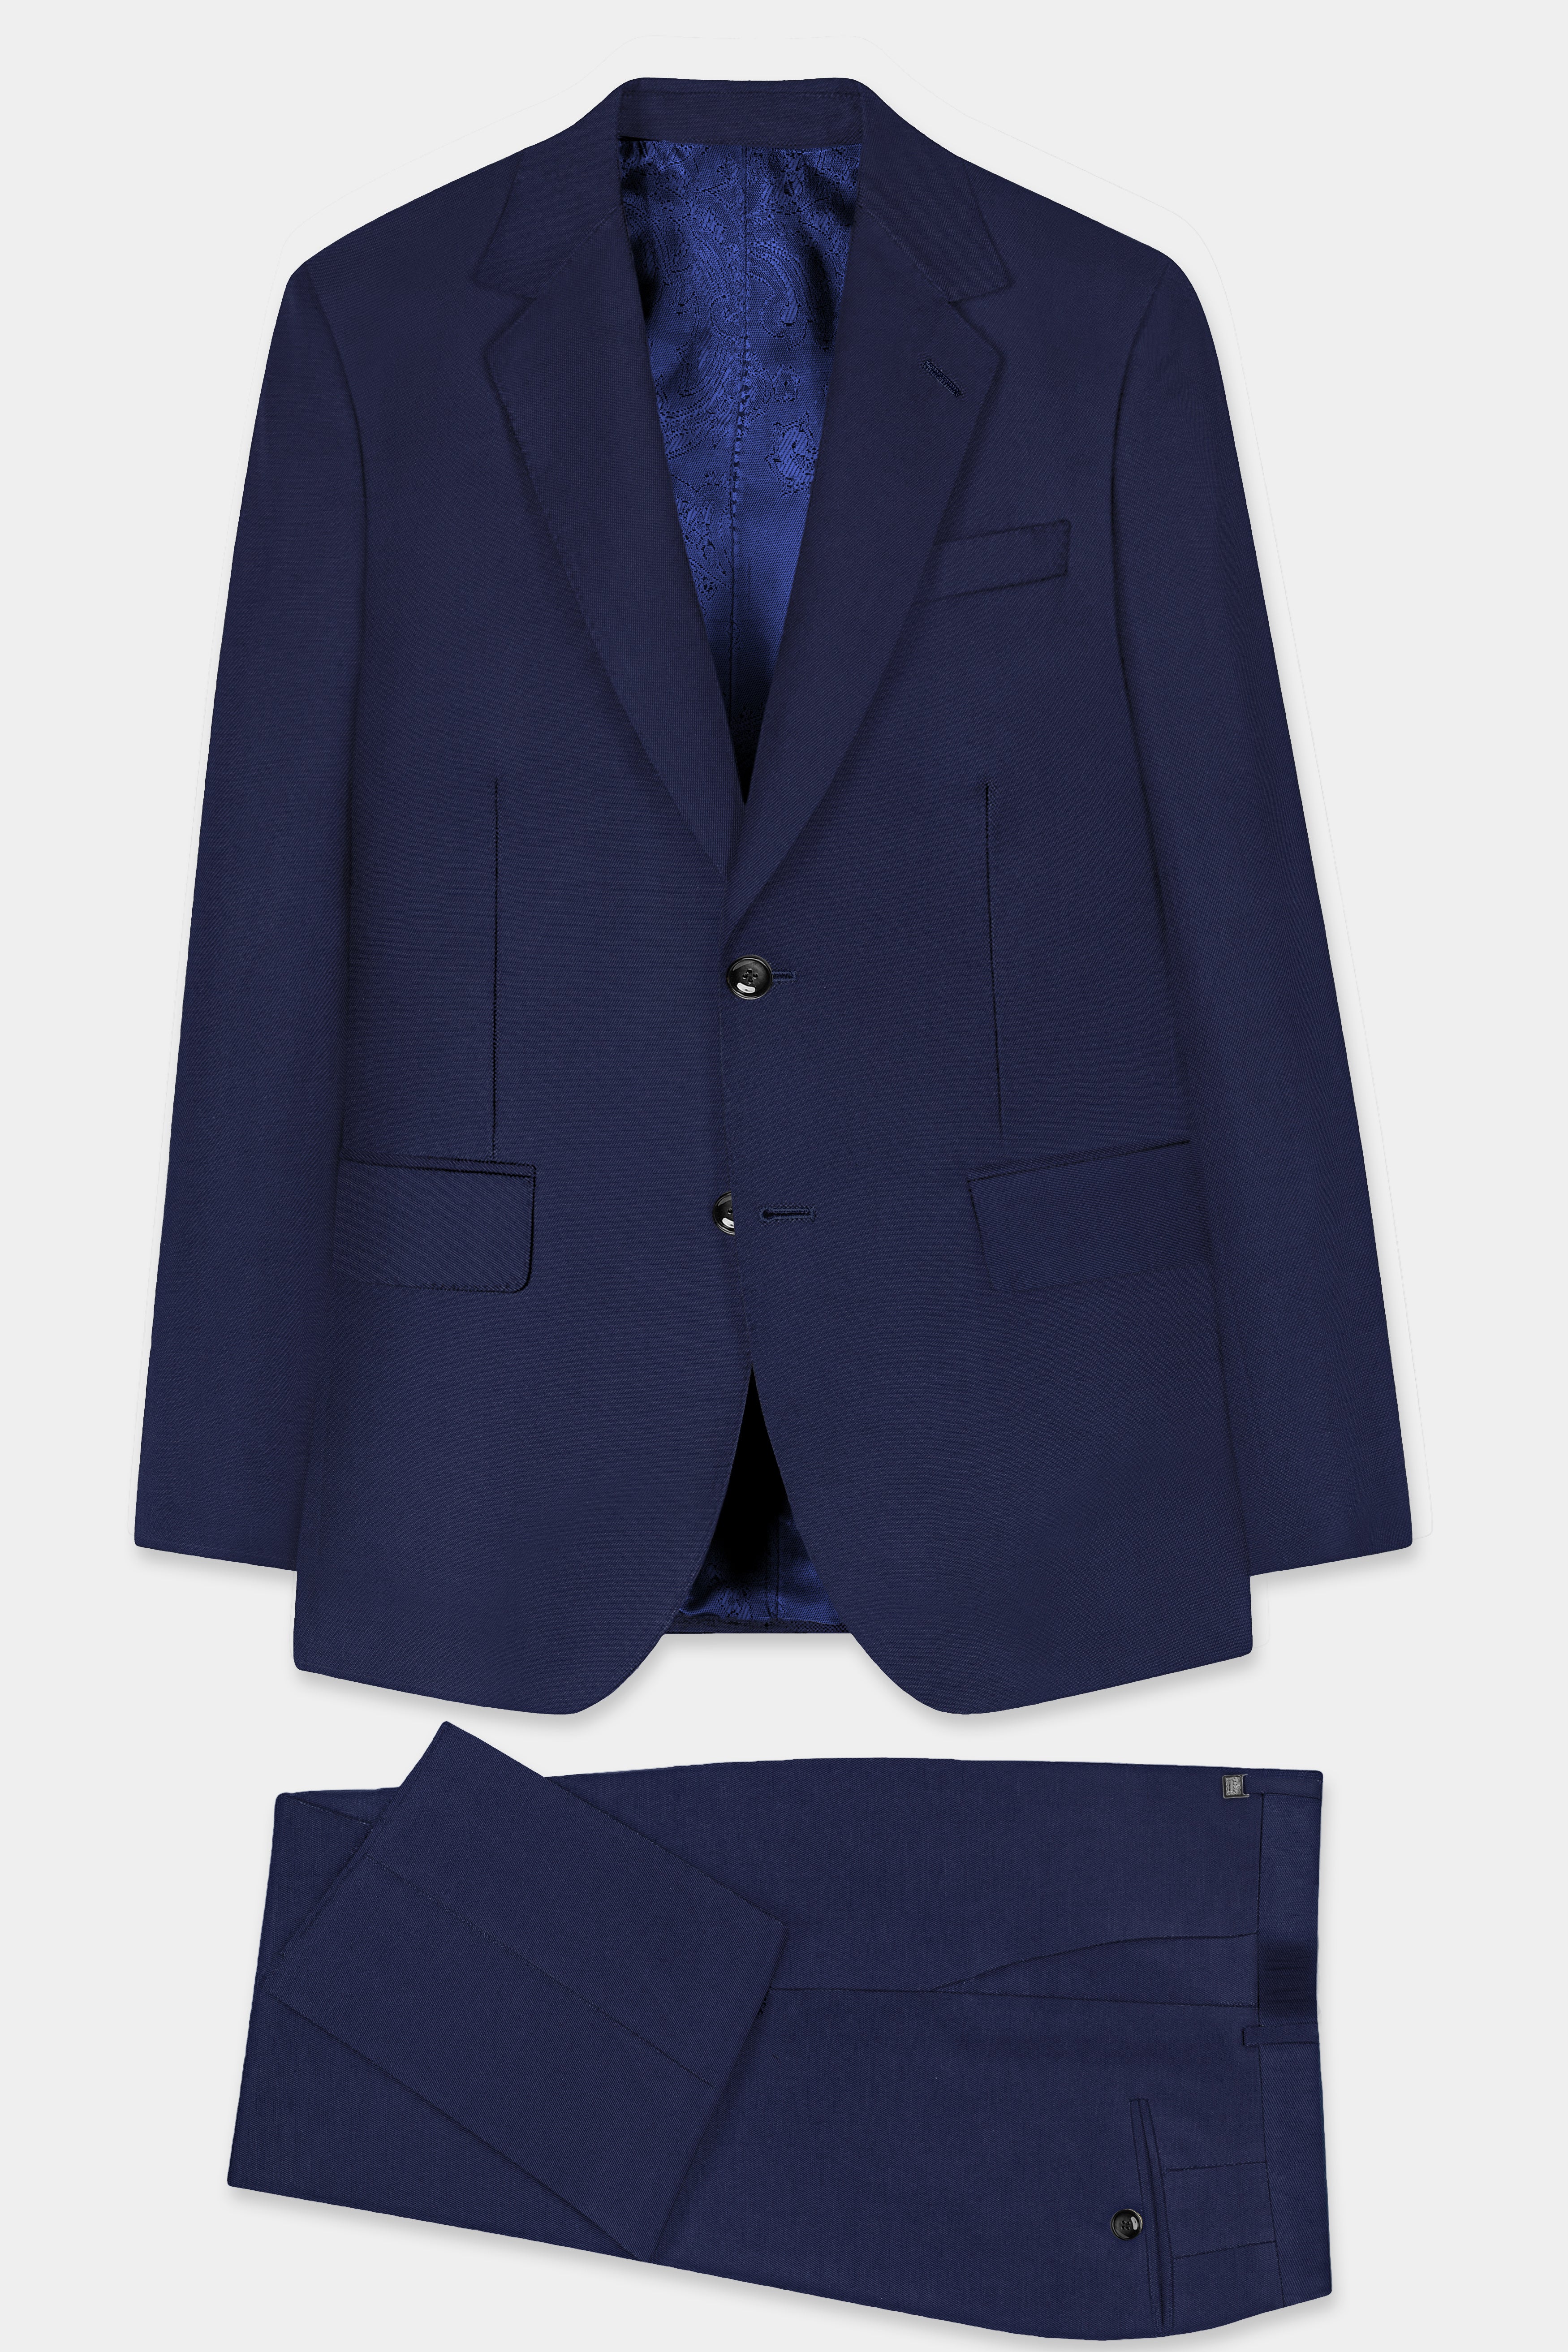 Tealish Blue Plain Solid Wool Blend Suit